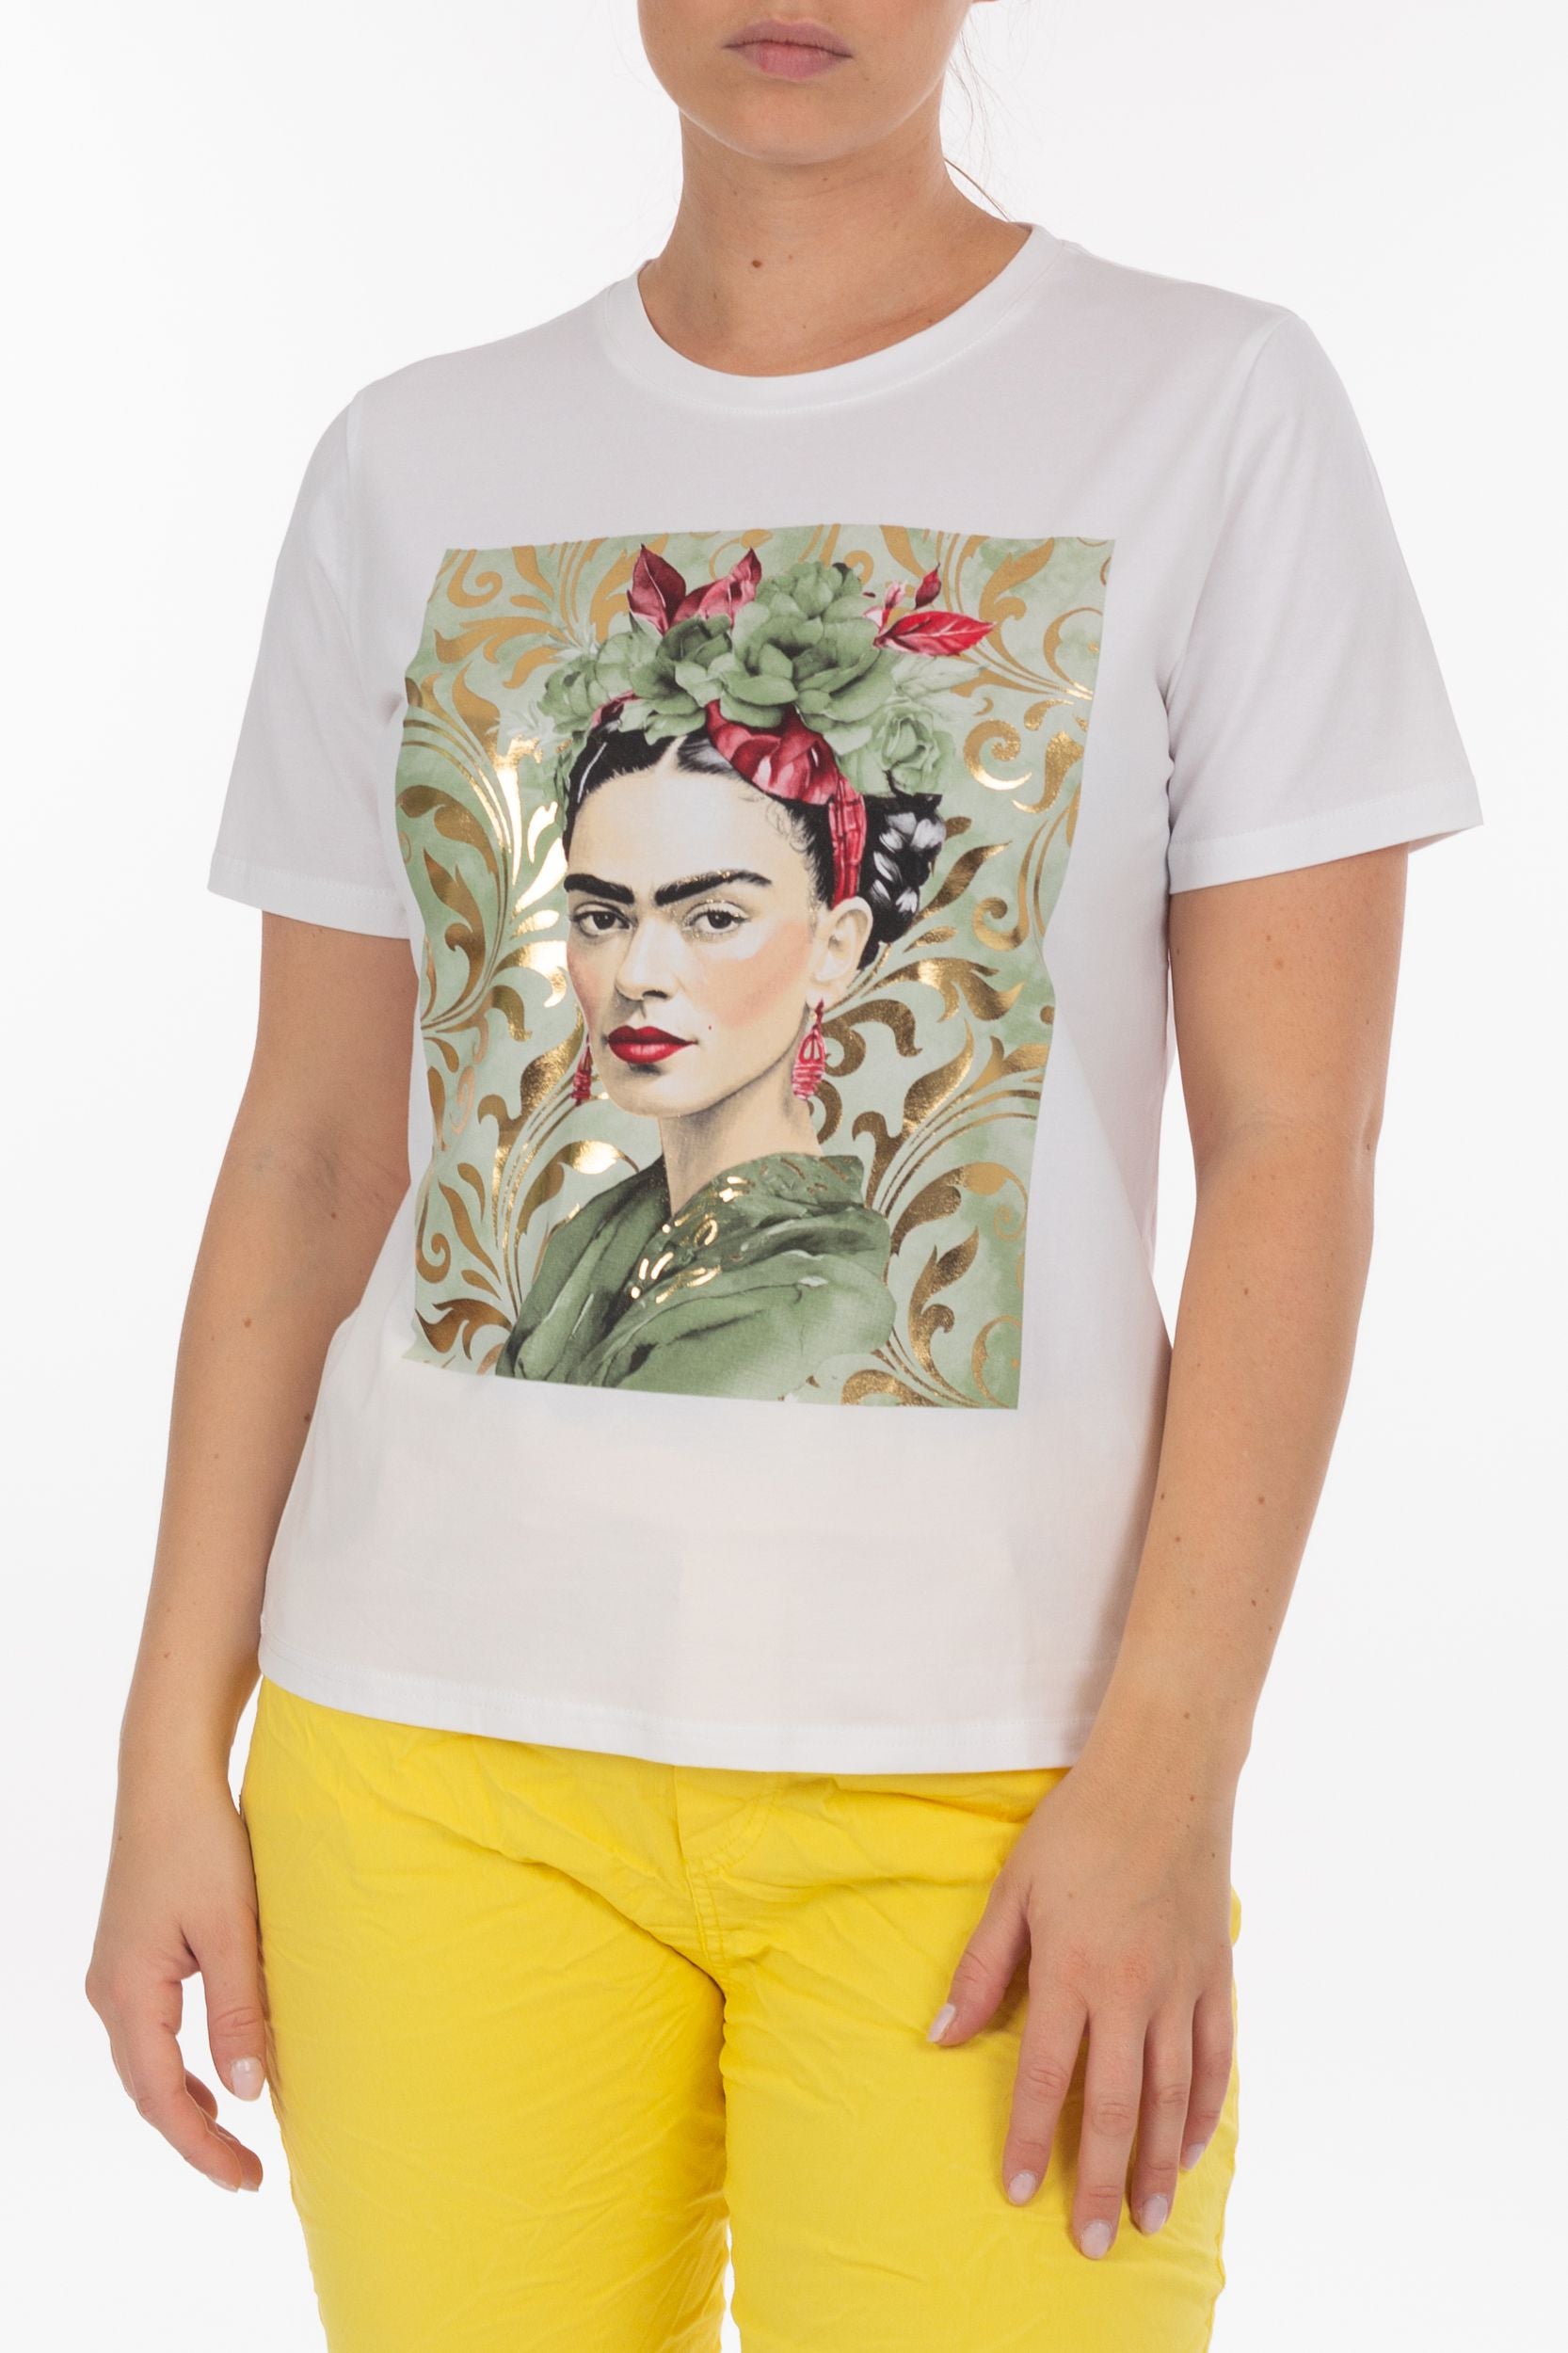 T-shirt with Frida Kahlo